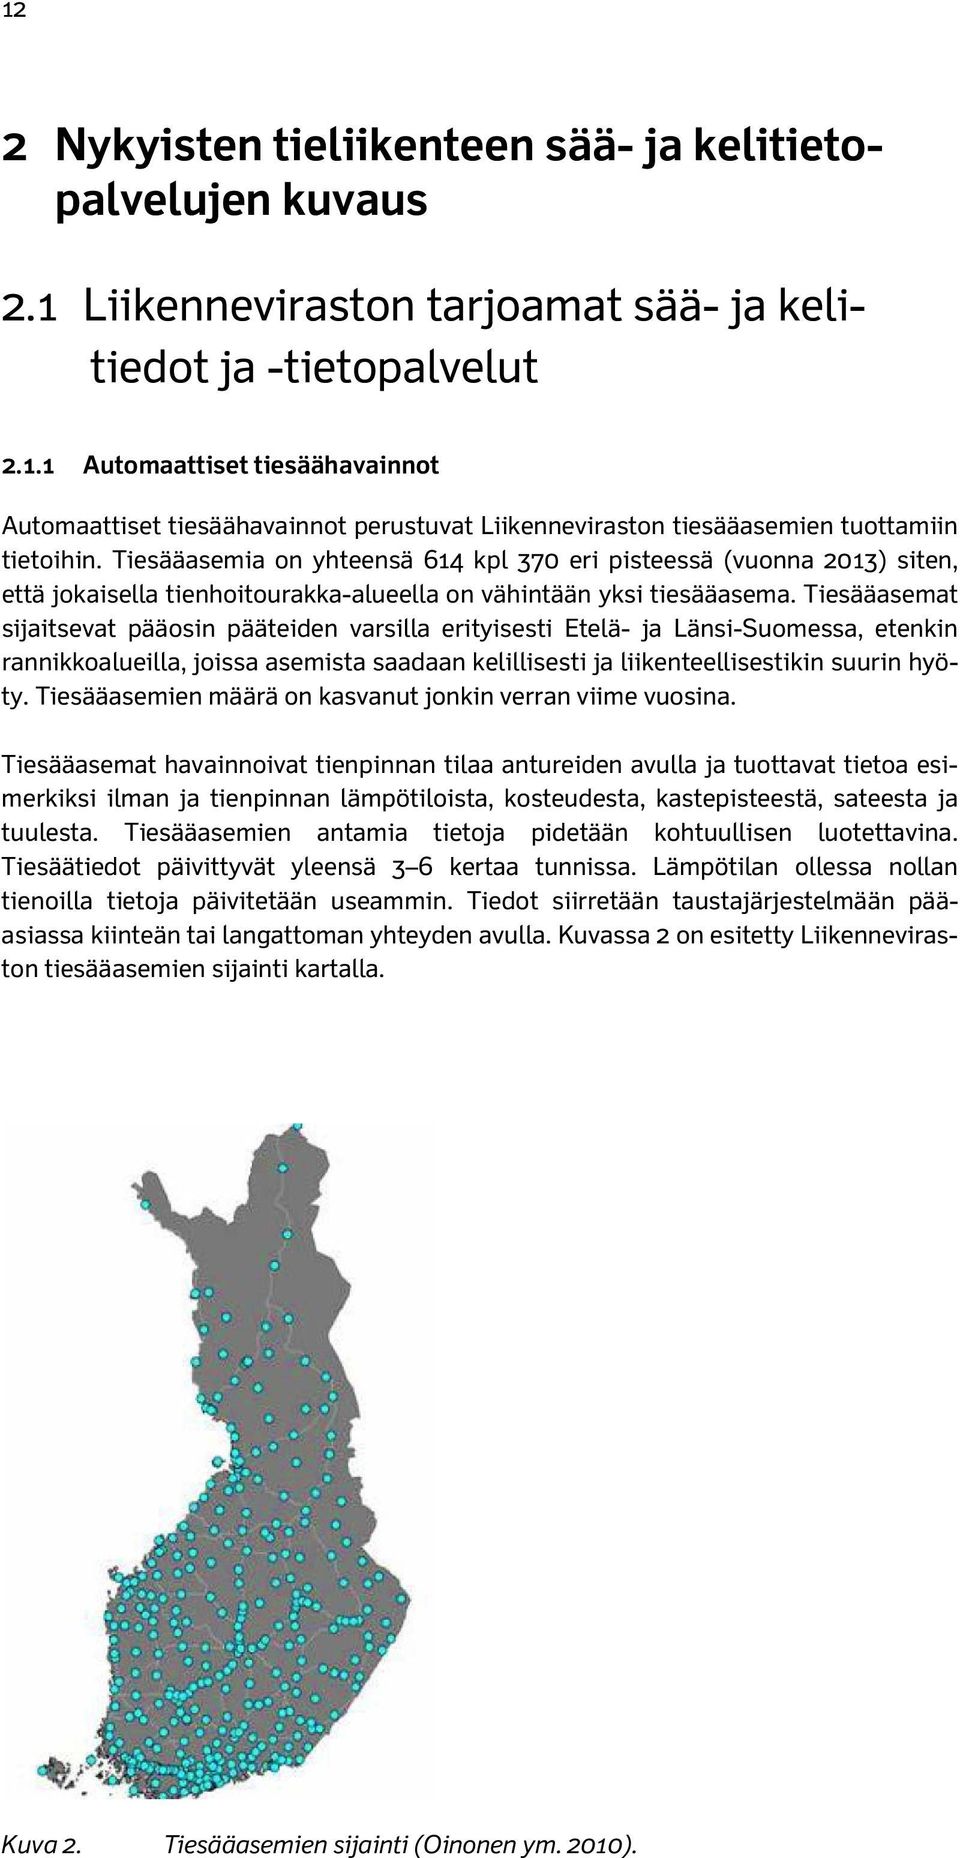 Tiesääasemat sijaitsevat pääosin pääteiden varsilla erityisesti Etelä- ja Länsi-Suomessa, etenkin rannikkoalueilla, joissa asemista saadaan kelillisesti ja liikenteellisestikin suurin hyöty.